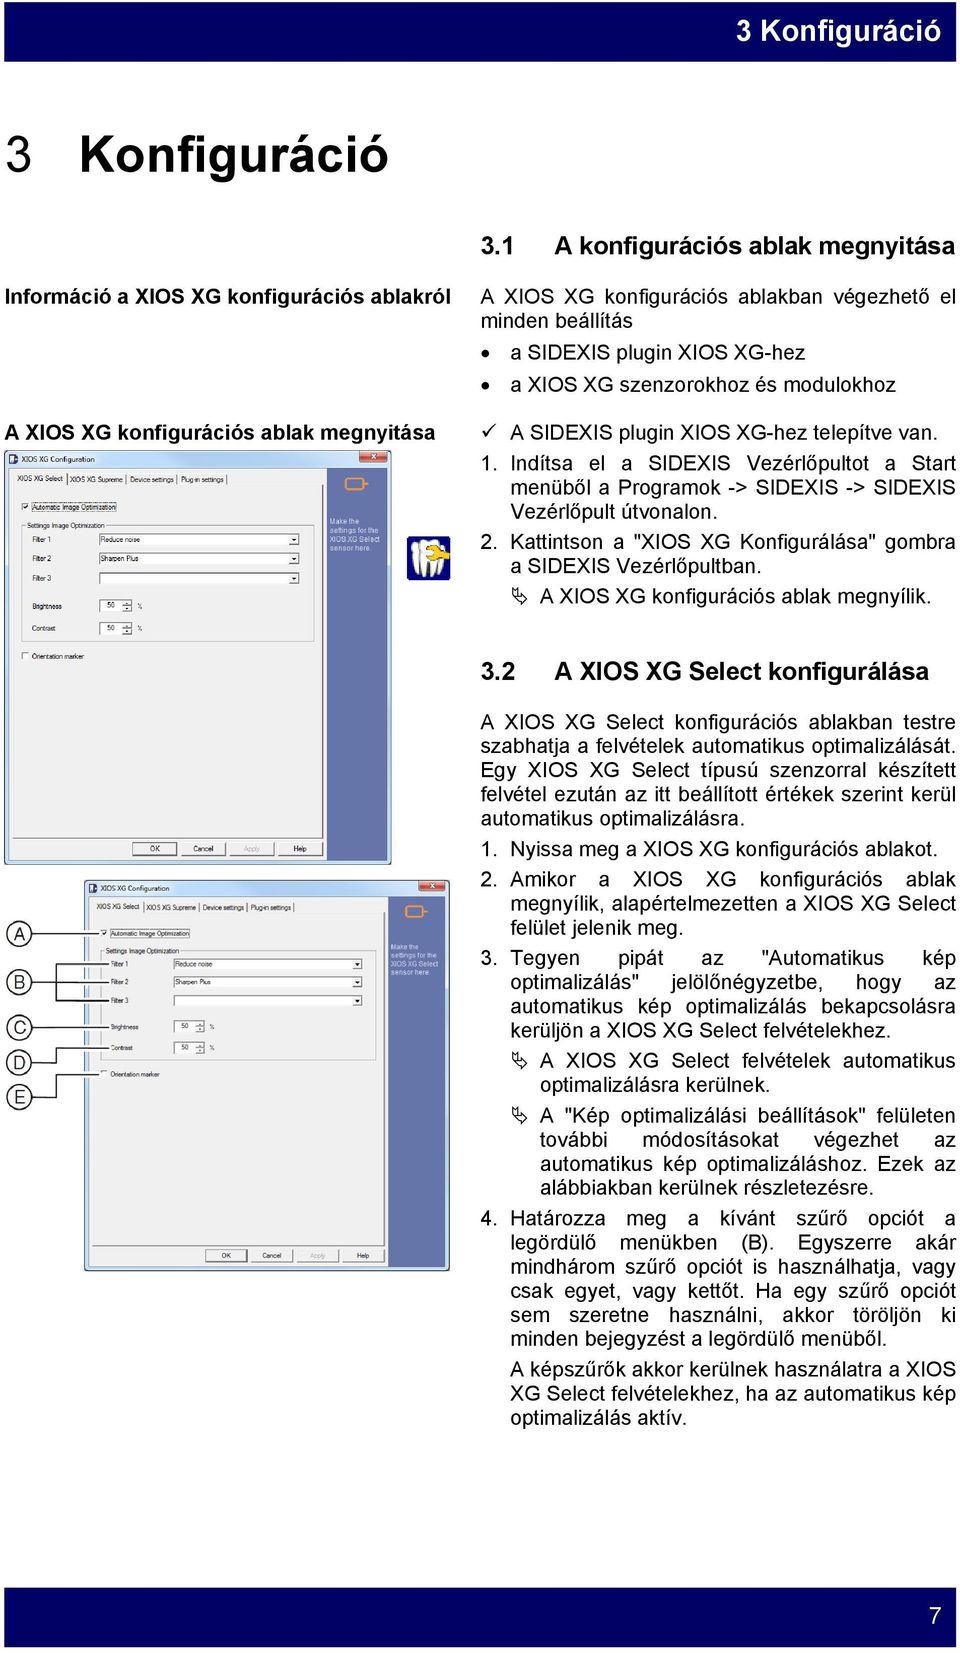 XIOS XG-hez a XIOS XG szenzorokhoz és modulokhoz A SIDEXIS plugin XIOS XG-hez telepítve van. 1.